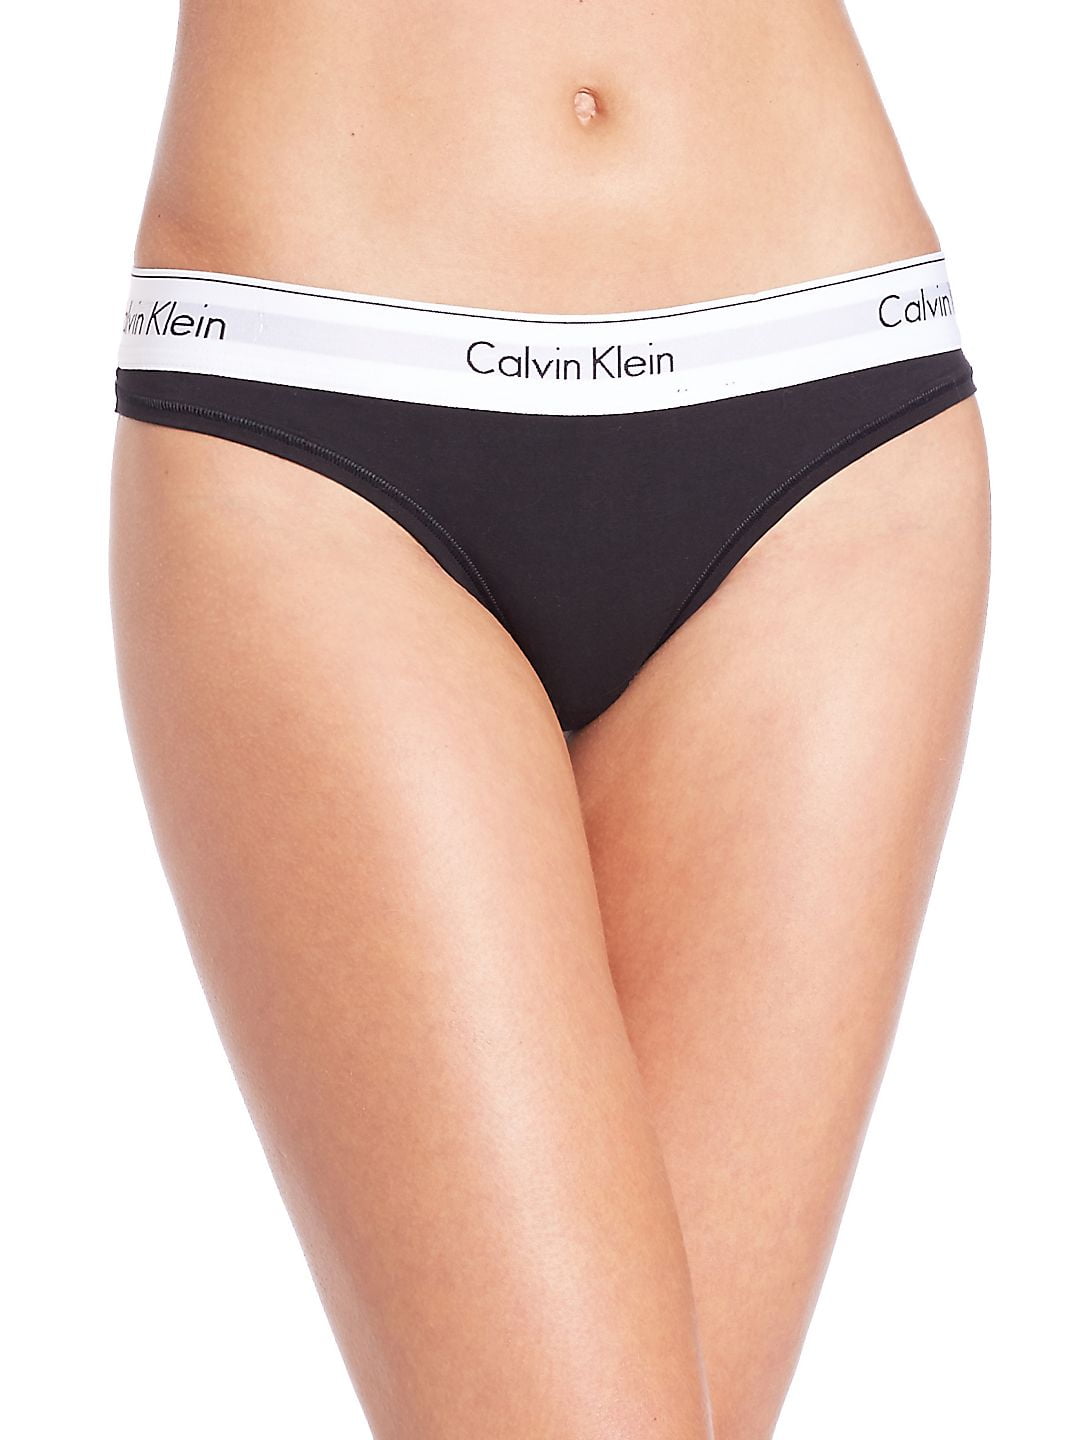 Calvin Klein Women's XS-XL Modern Cotton Thong Panty, Black, Large